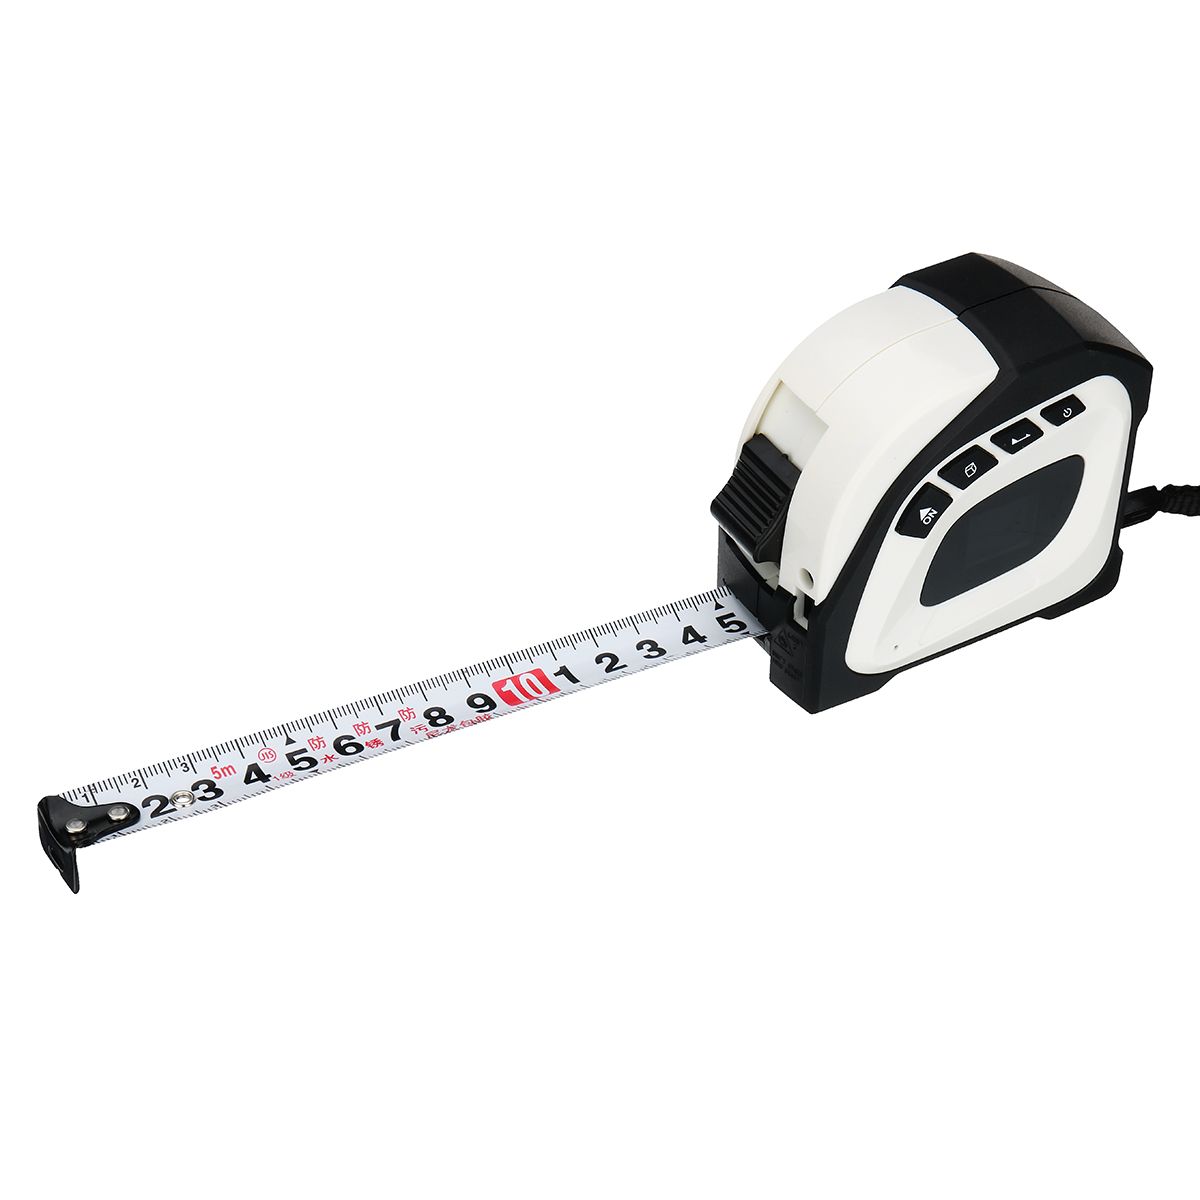 2-in-1-405M-Laser-Ruler-Rangefinder-LED-Digital-Tape-Measure-Distance-Gauging-1571281